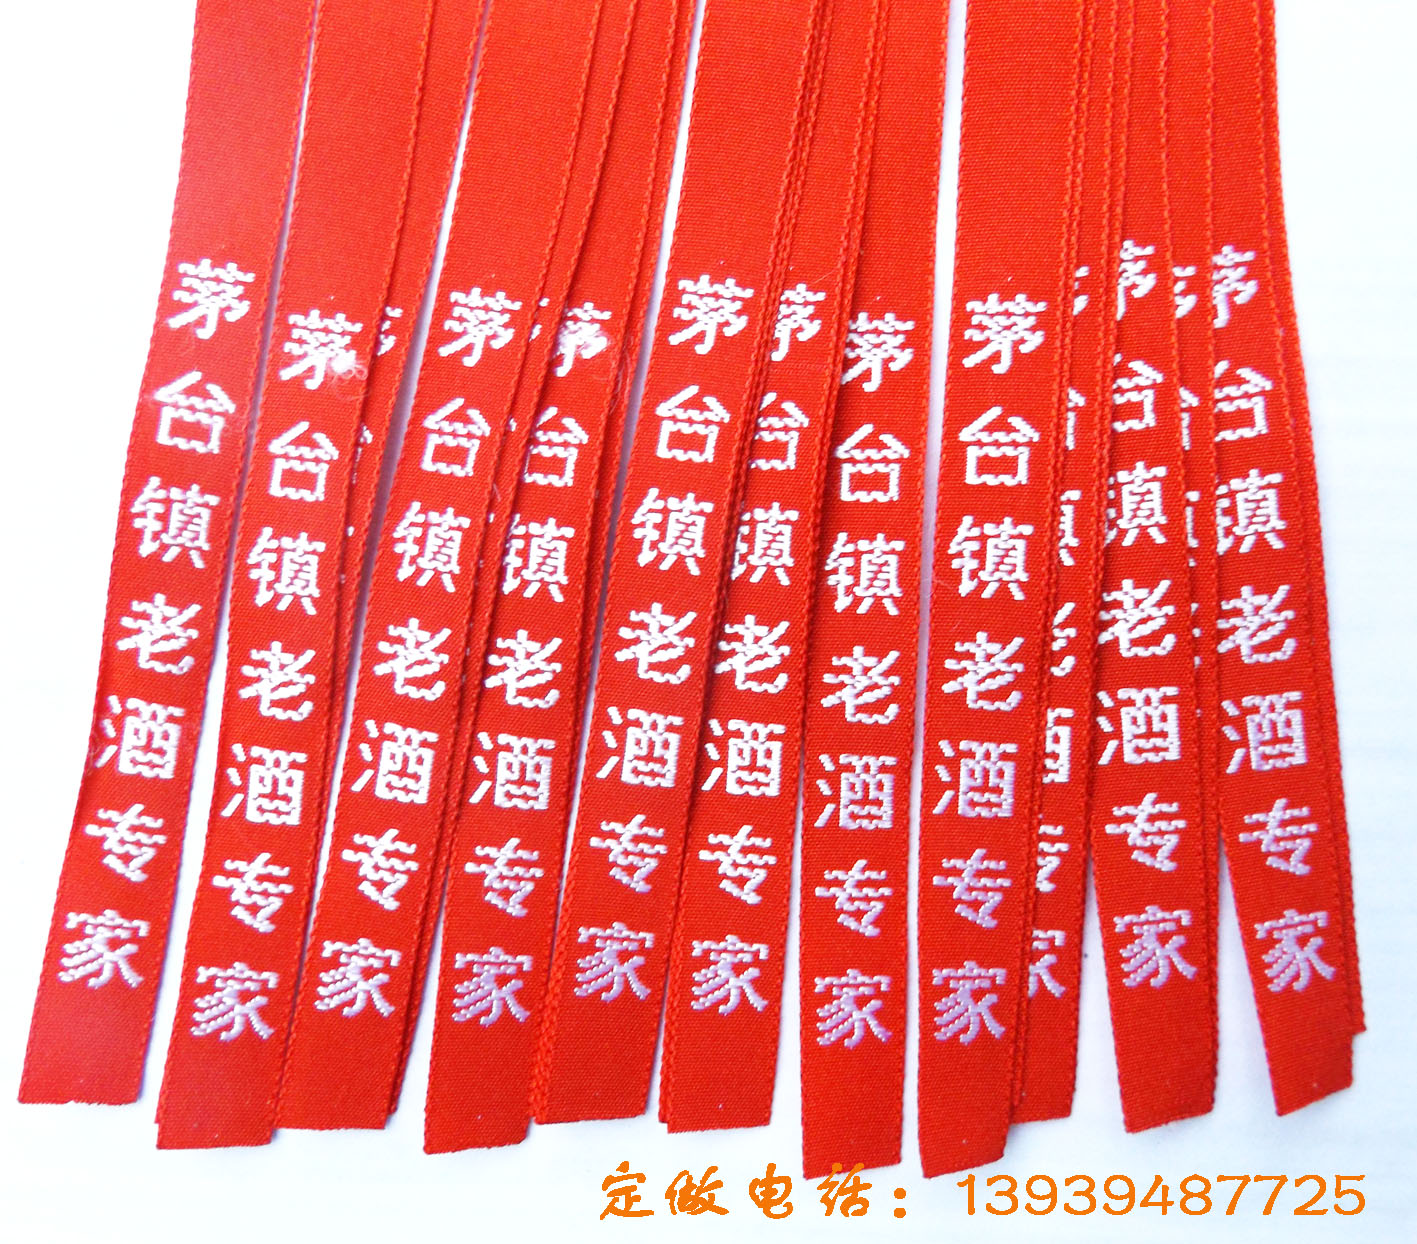 丝带加工供应用于酒丝带包装的酒丝带供应商 丝带加工